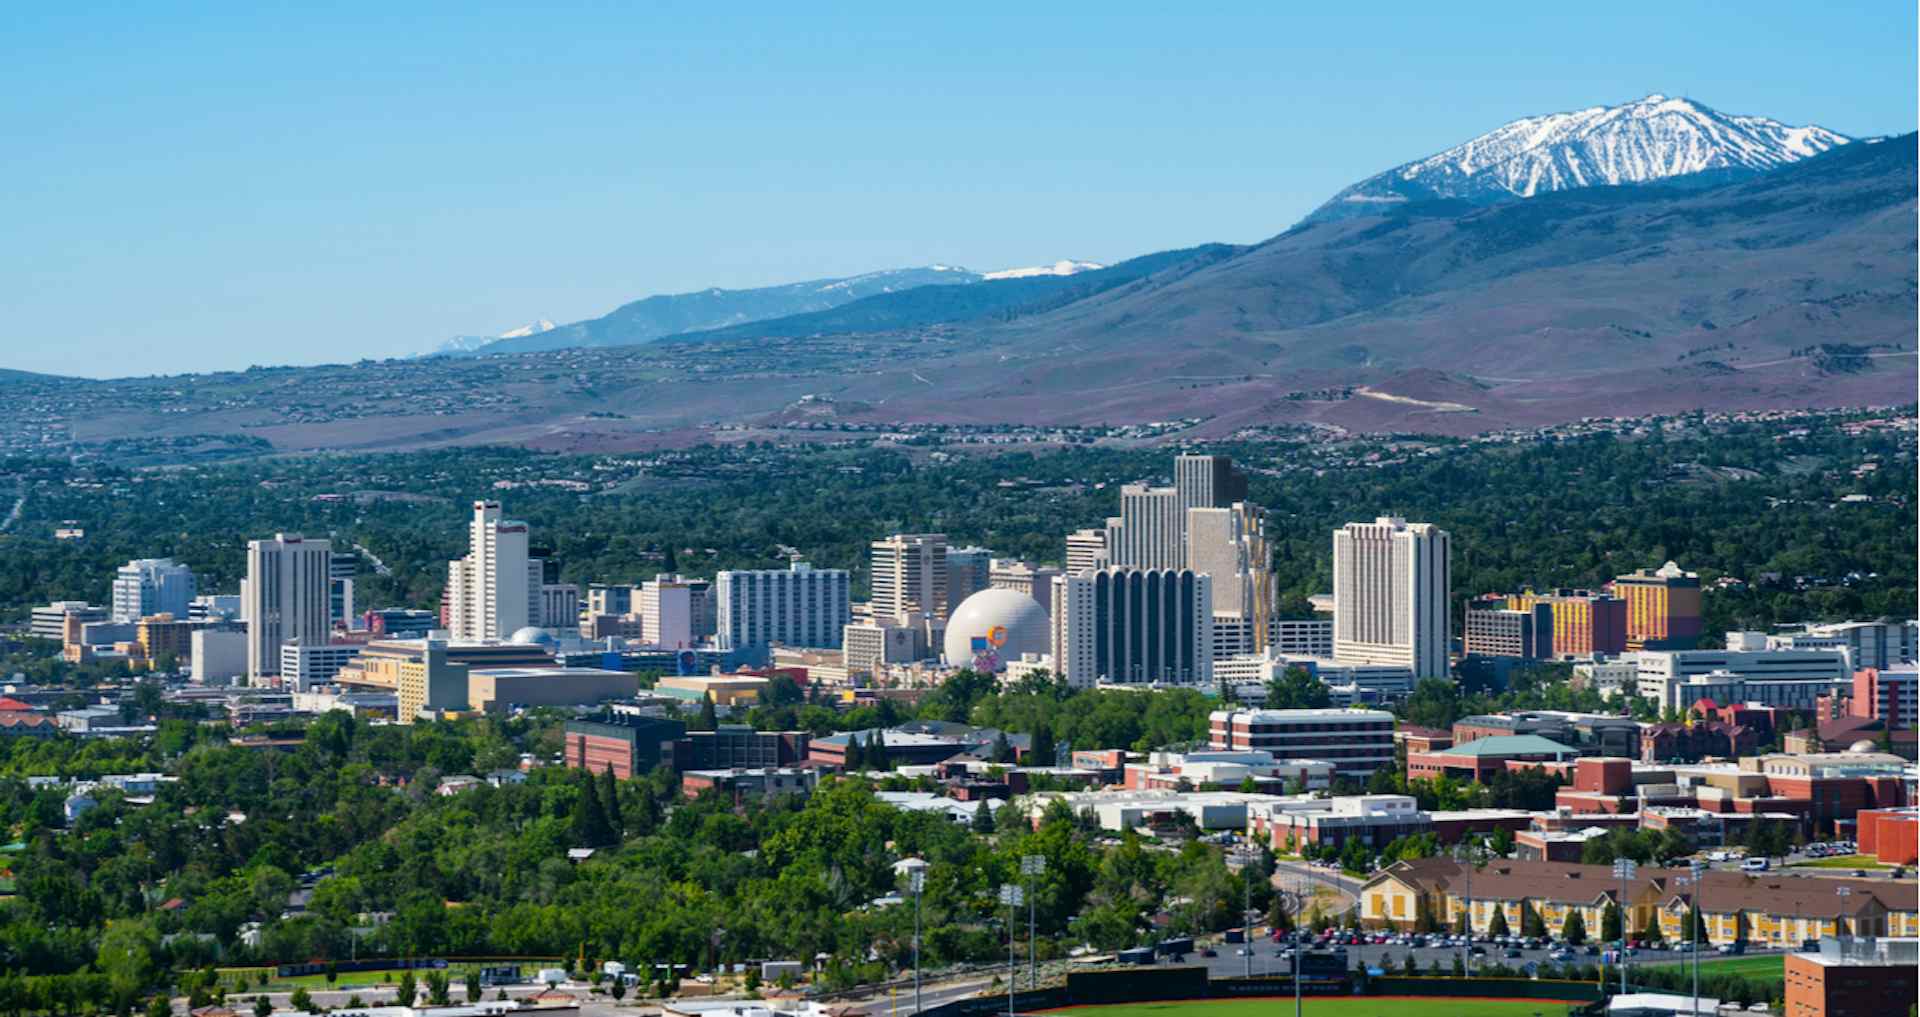 5 Best Neighborhoods to Live in Reno, NV